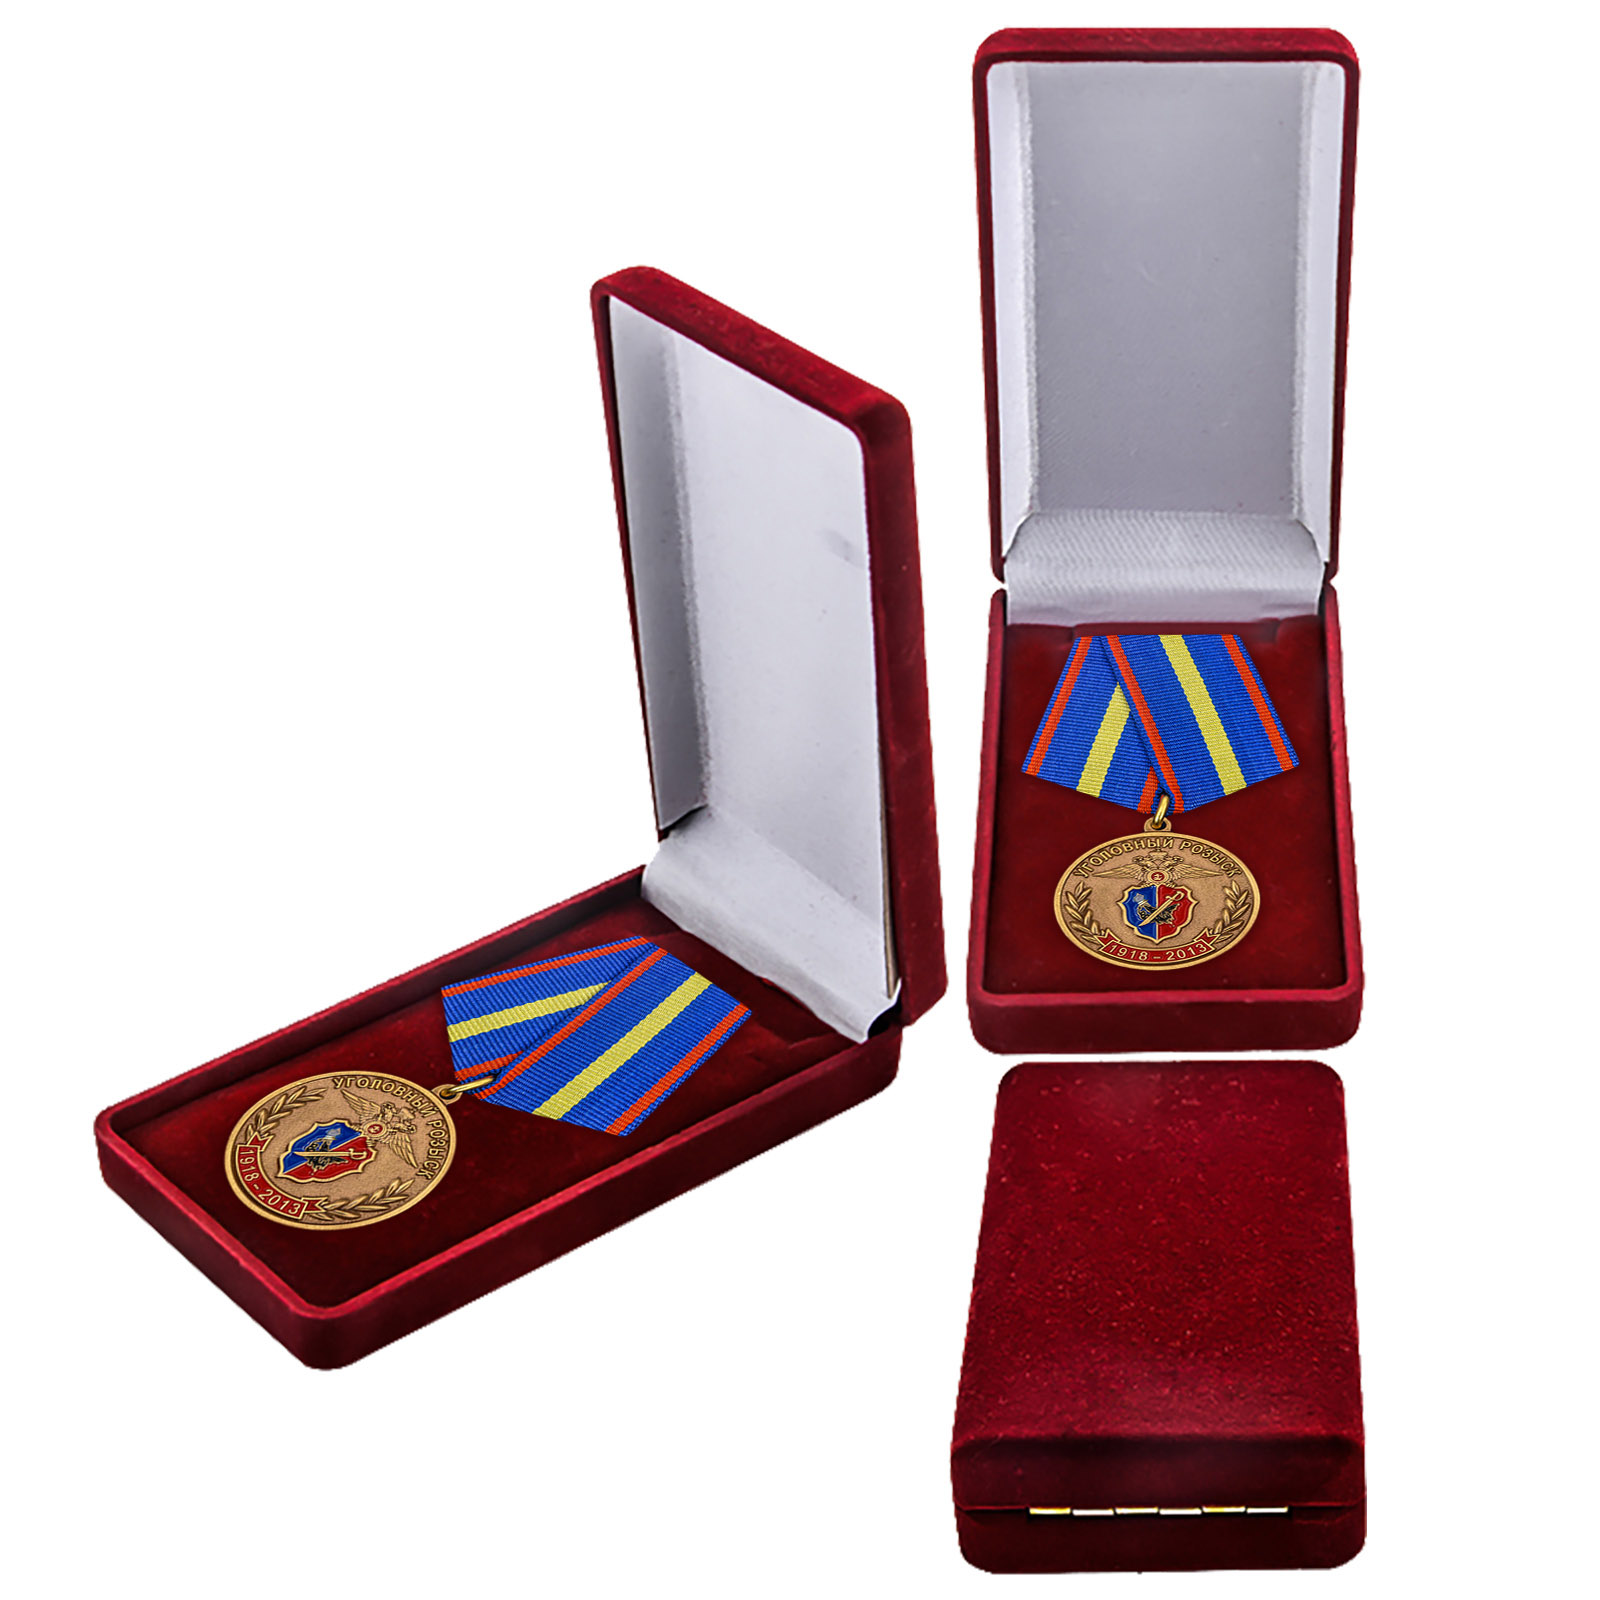 Купить юбилейную медаль 95 лет Уголовному Розыску МВД России в подарок